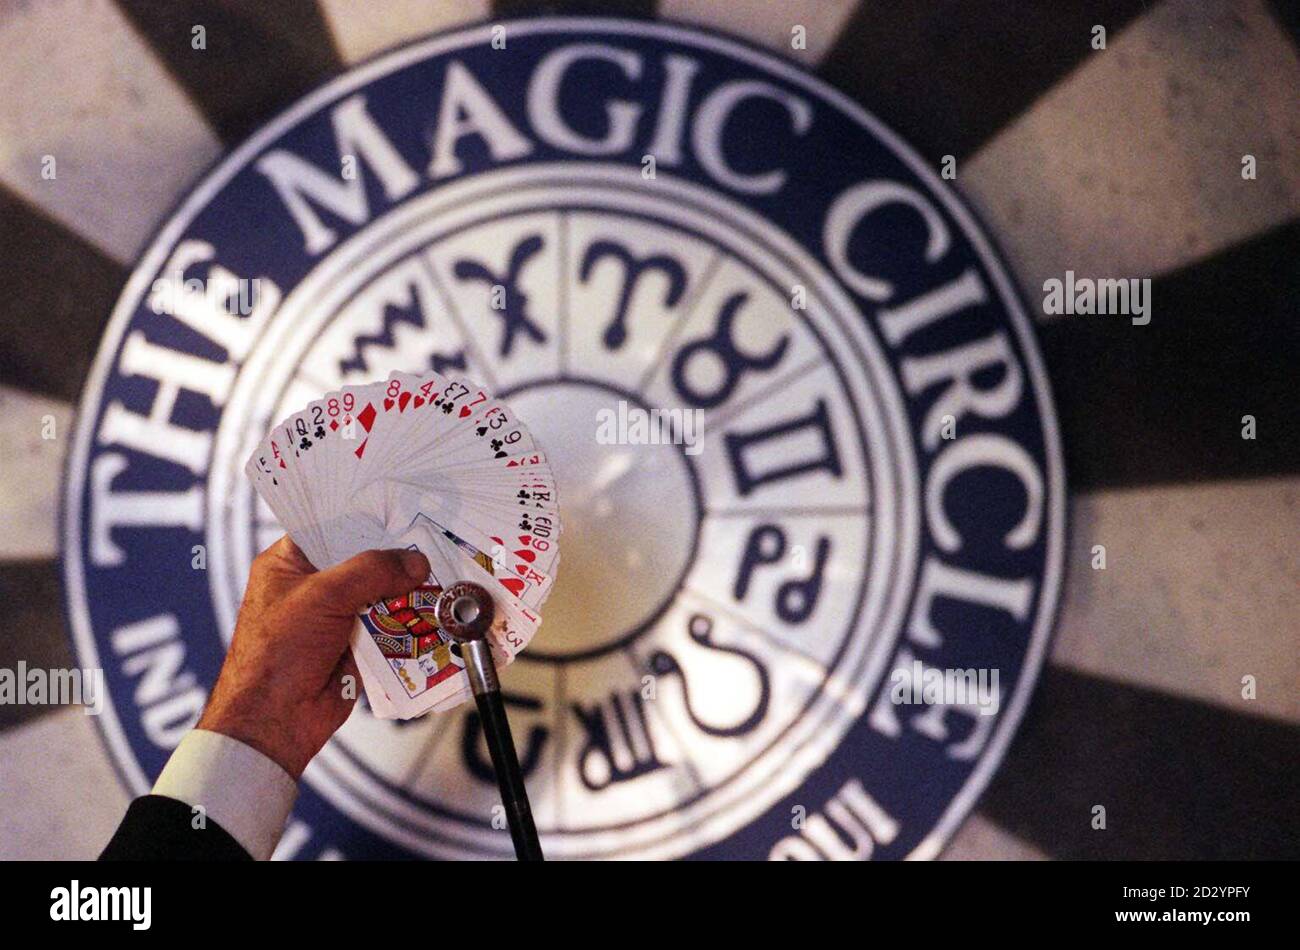 Henry Lewis Kurator des neuen Magischen Museums "The Center for the Magic Arts" bei Euston zeigt seine Karten, während das Museum seine Geheimnisse heute (Freitag) zum ersten Mal der Öffentlichkeit öffnet. Siehe PA Story SOCIAL Magic. Foto von Neil Munns/PA. Stockfoto